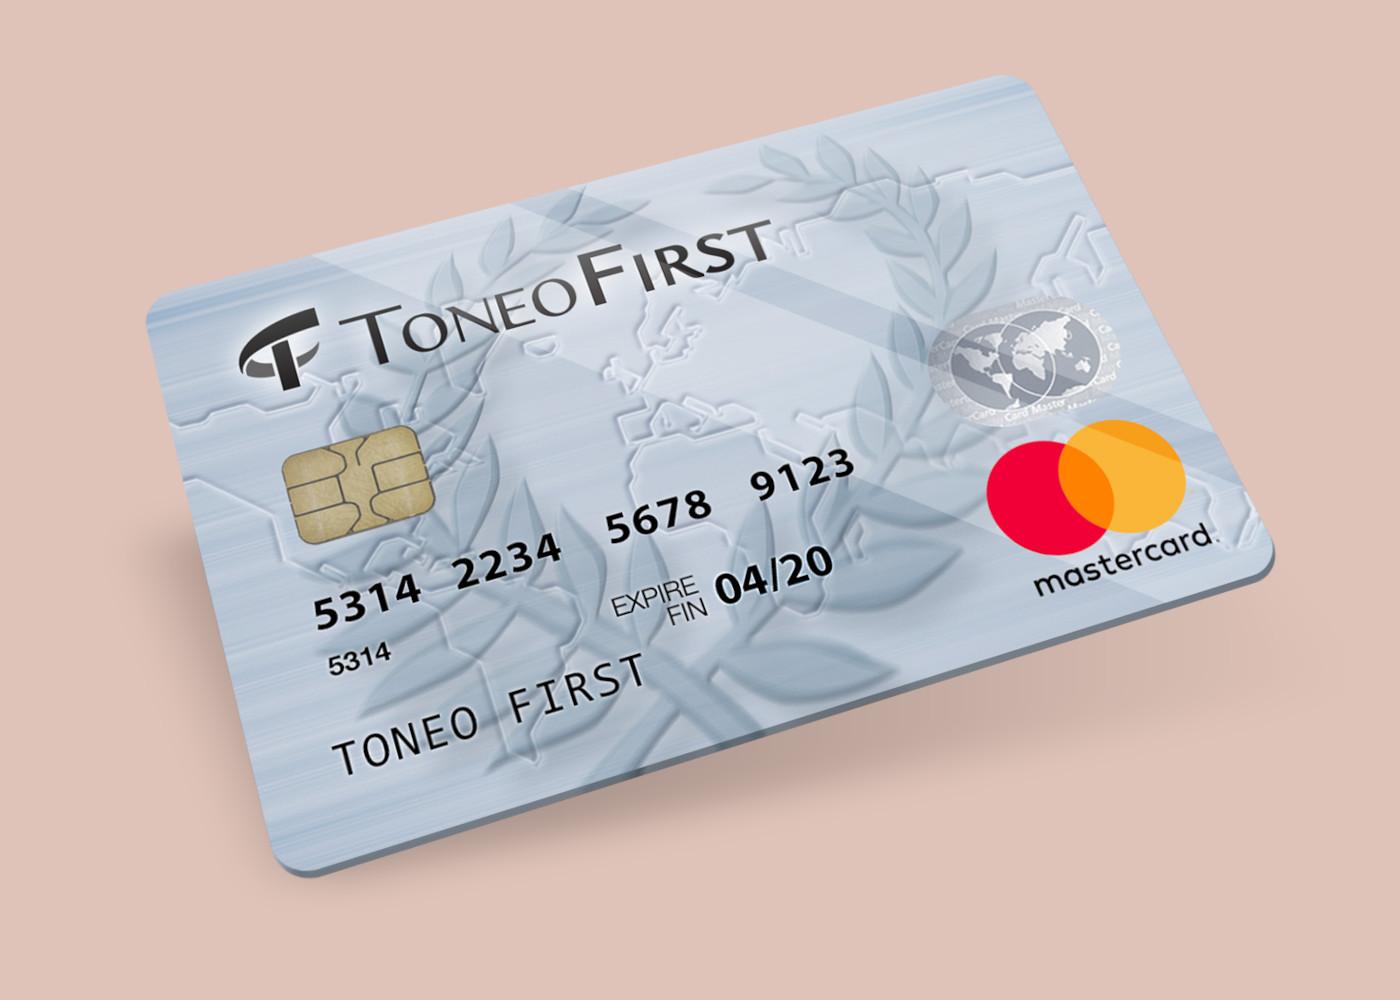 Toneo First Mastercard €15 Gift Card EU [USD 19.63]